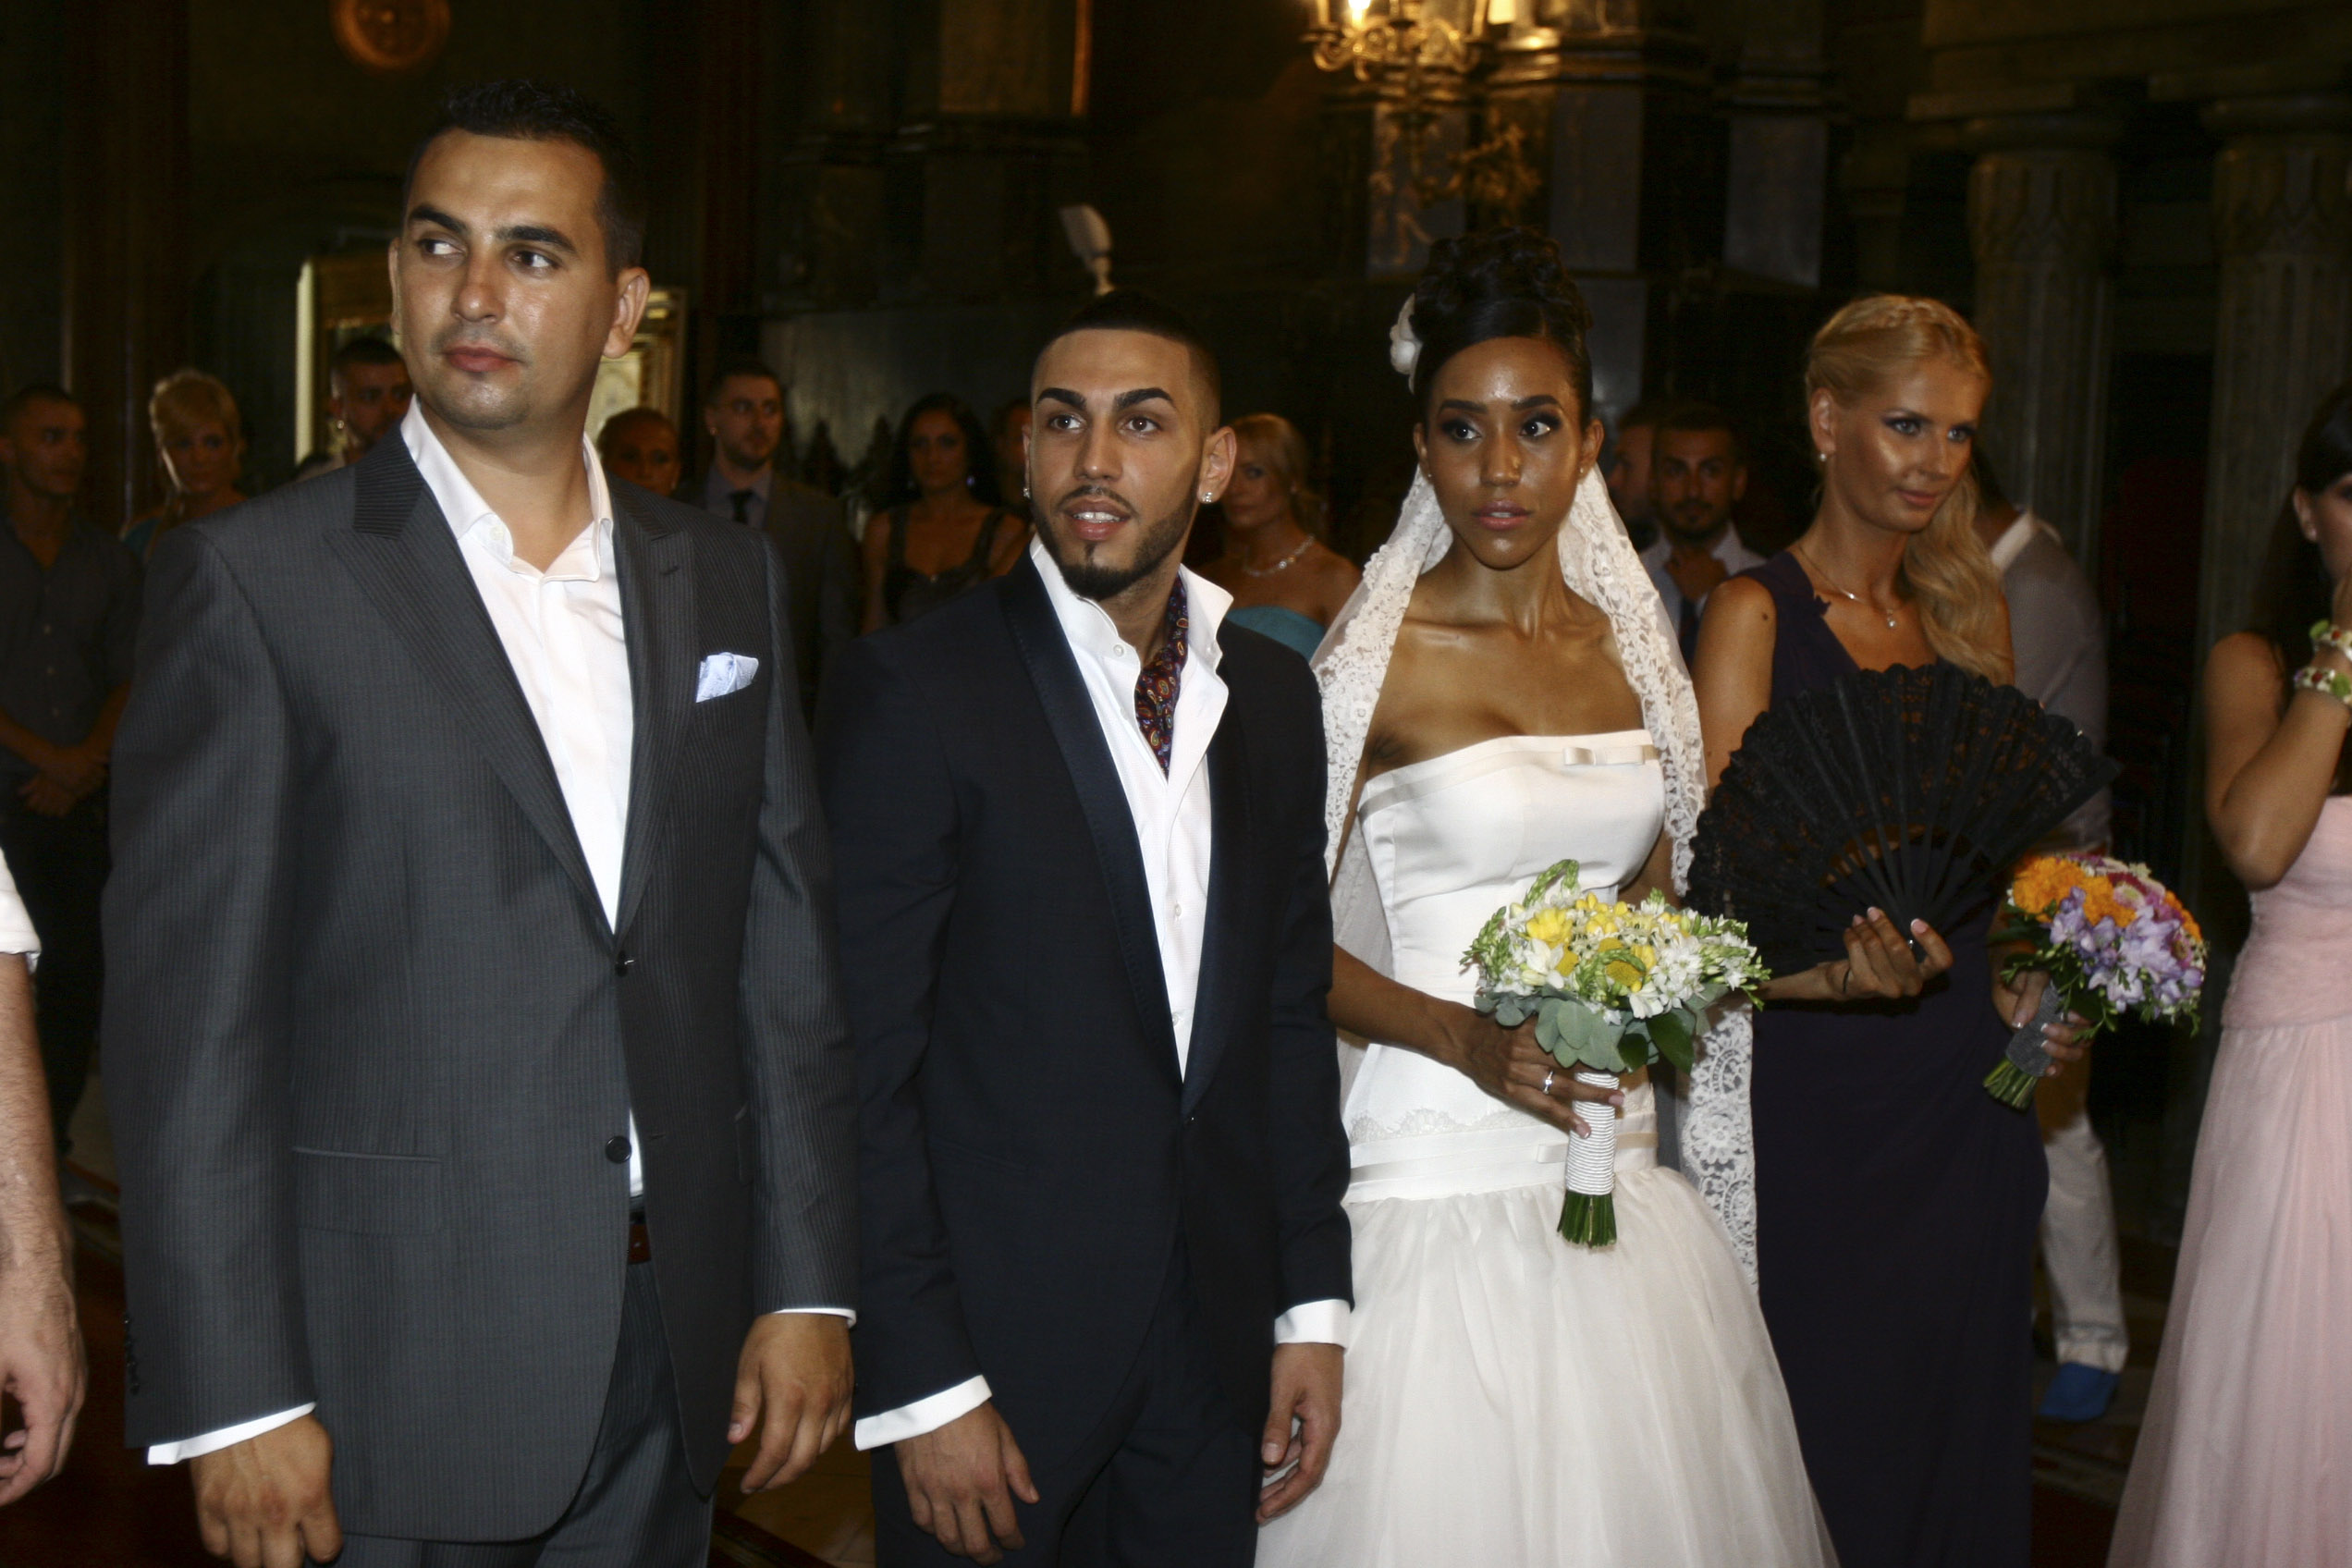 Ana si Alex Velea s-au casatorit pe 18 iulie 2010, după 2 ani de relaţie, iar naşi le-au fost Andreea Bănică şi Lucian Mitrea